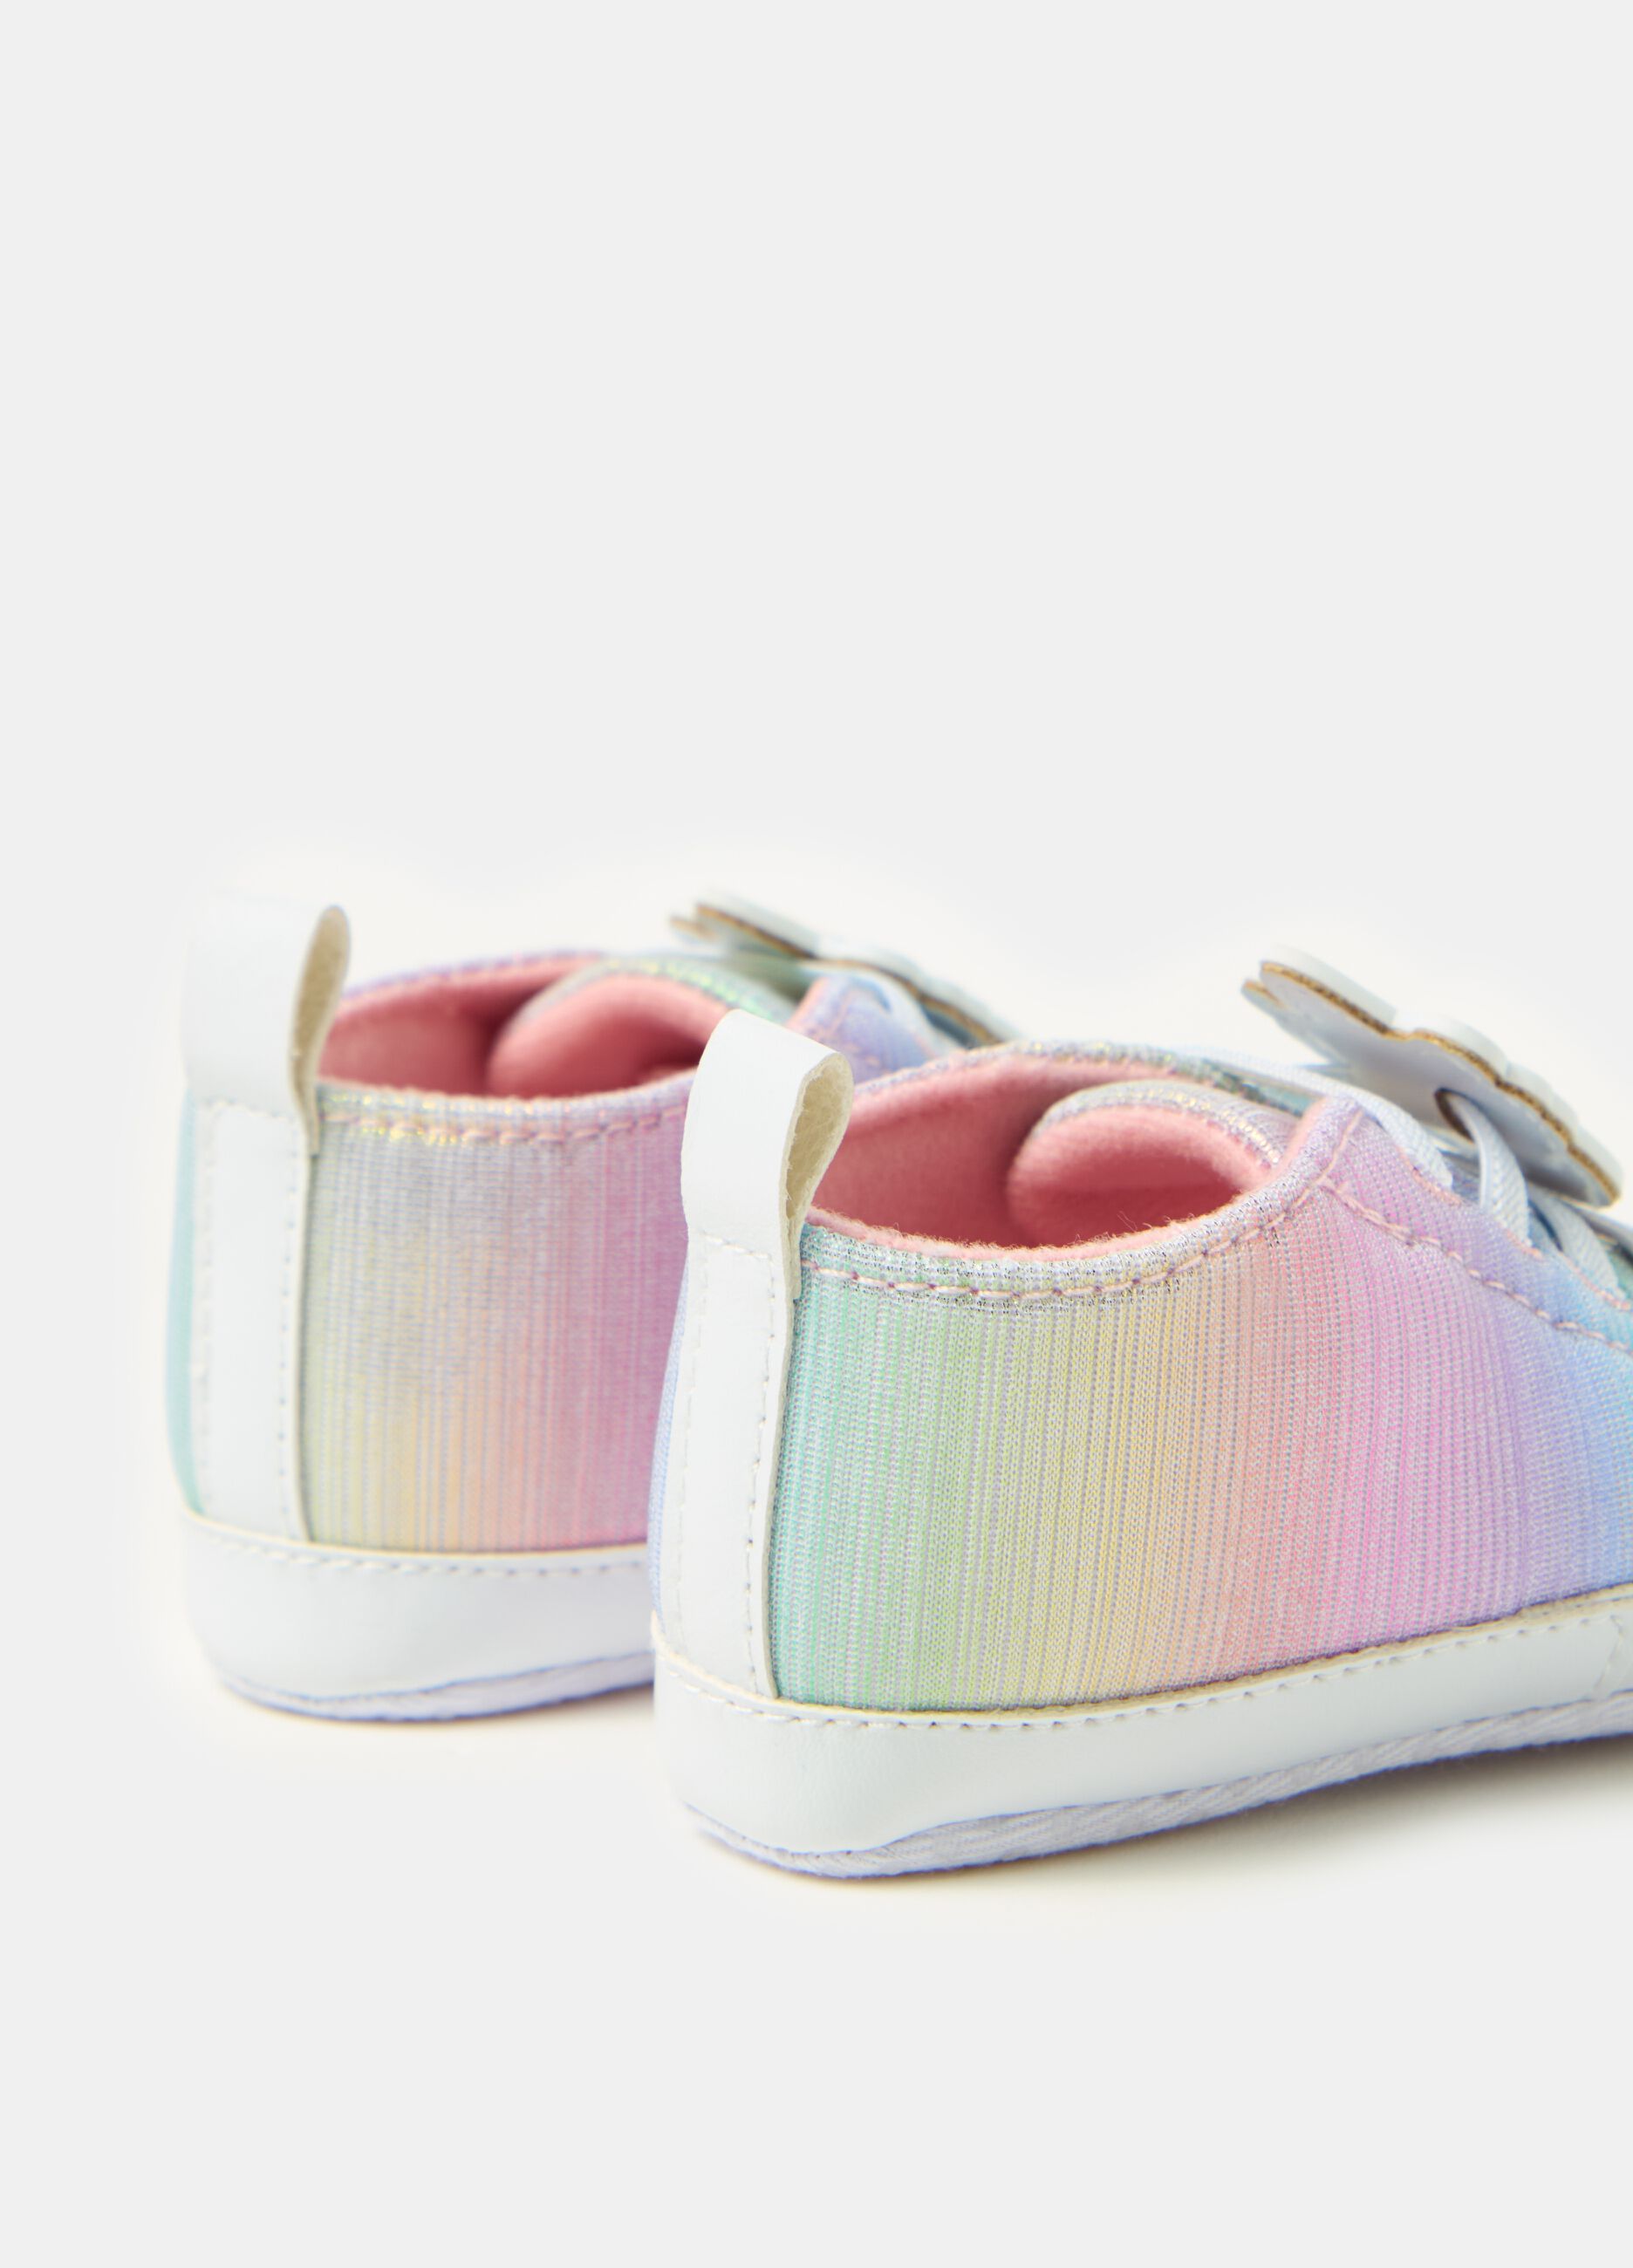 Rainbow sneakers with unicorn